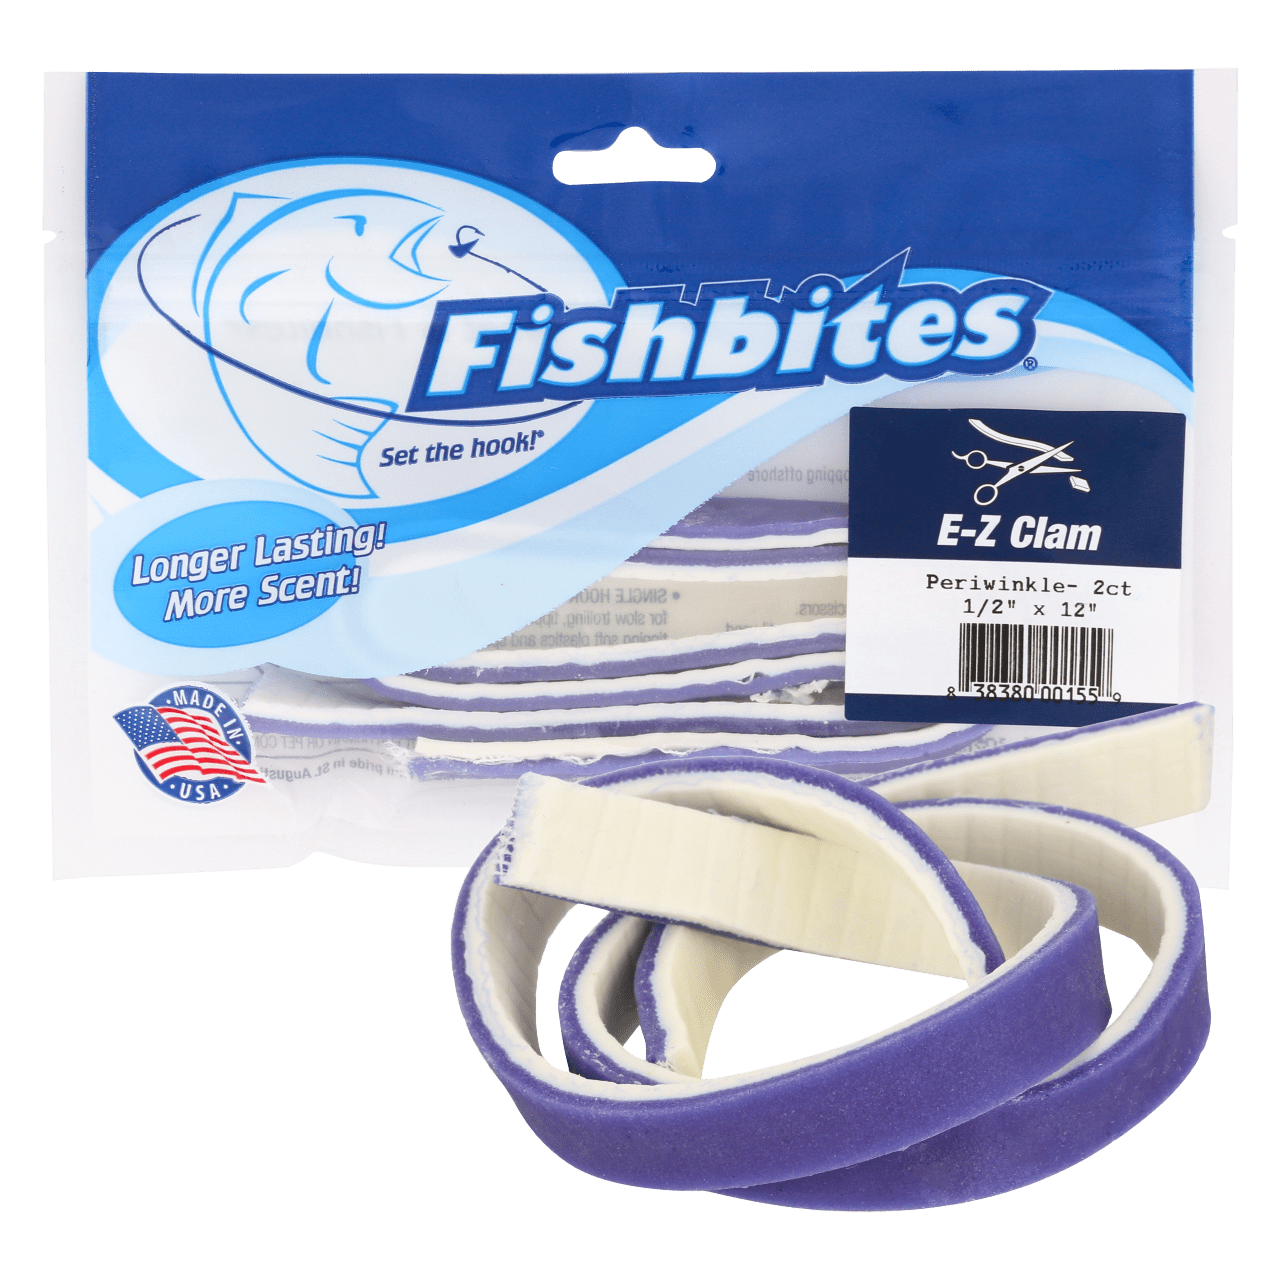 Fishbites® Longer Lasting E-Z Clam Periwinkle - Fishbites